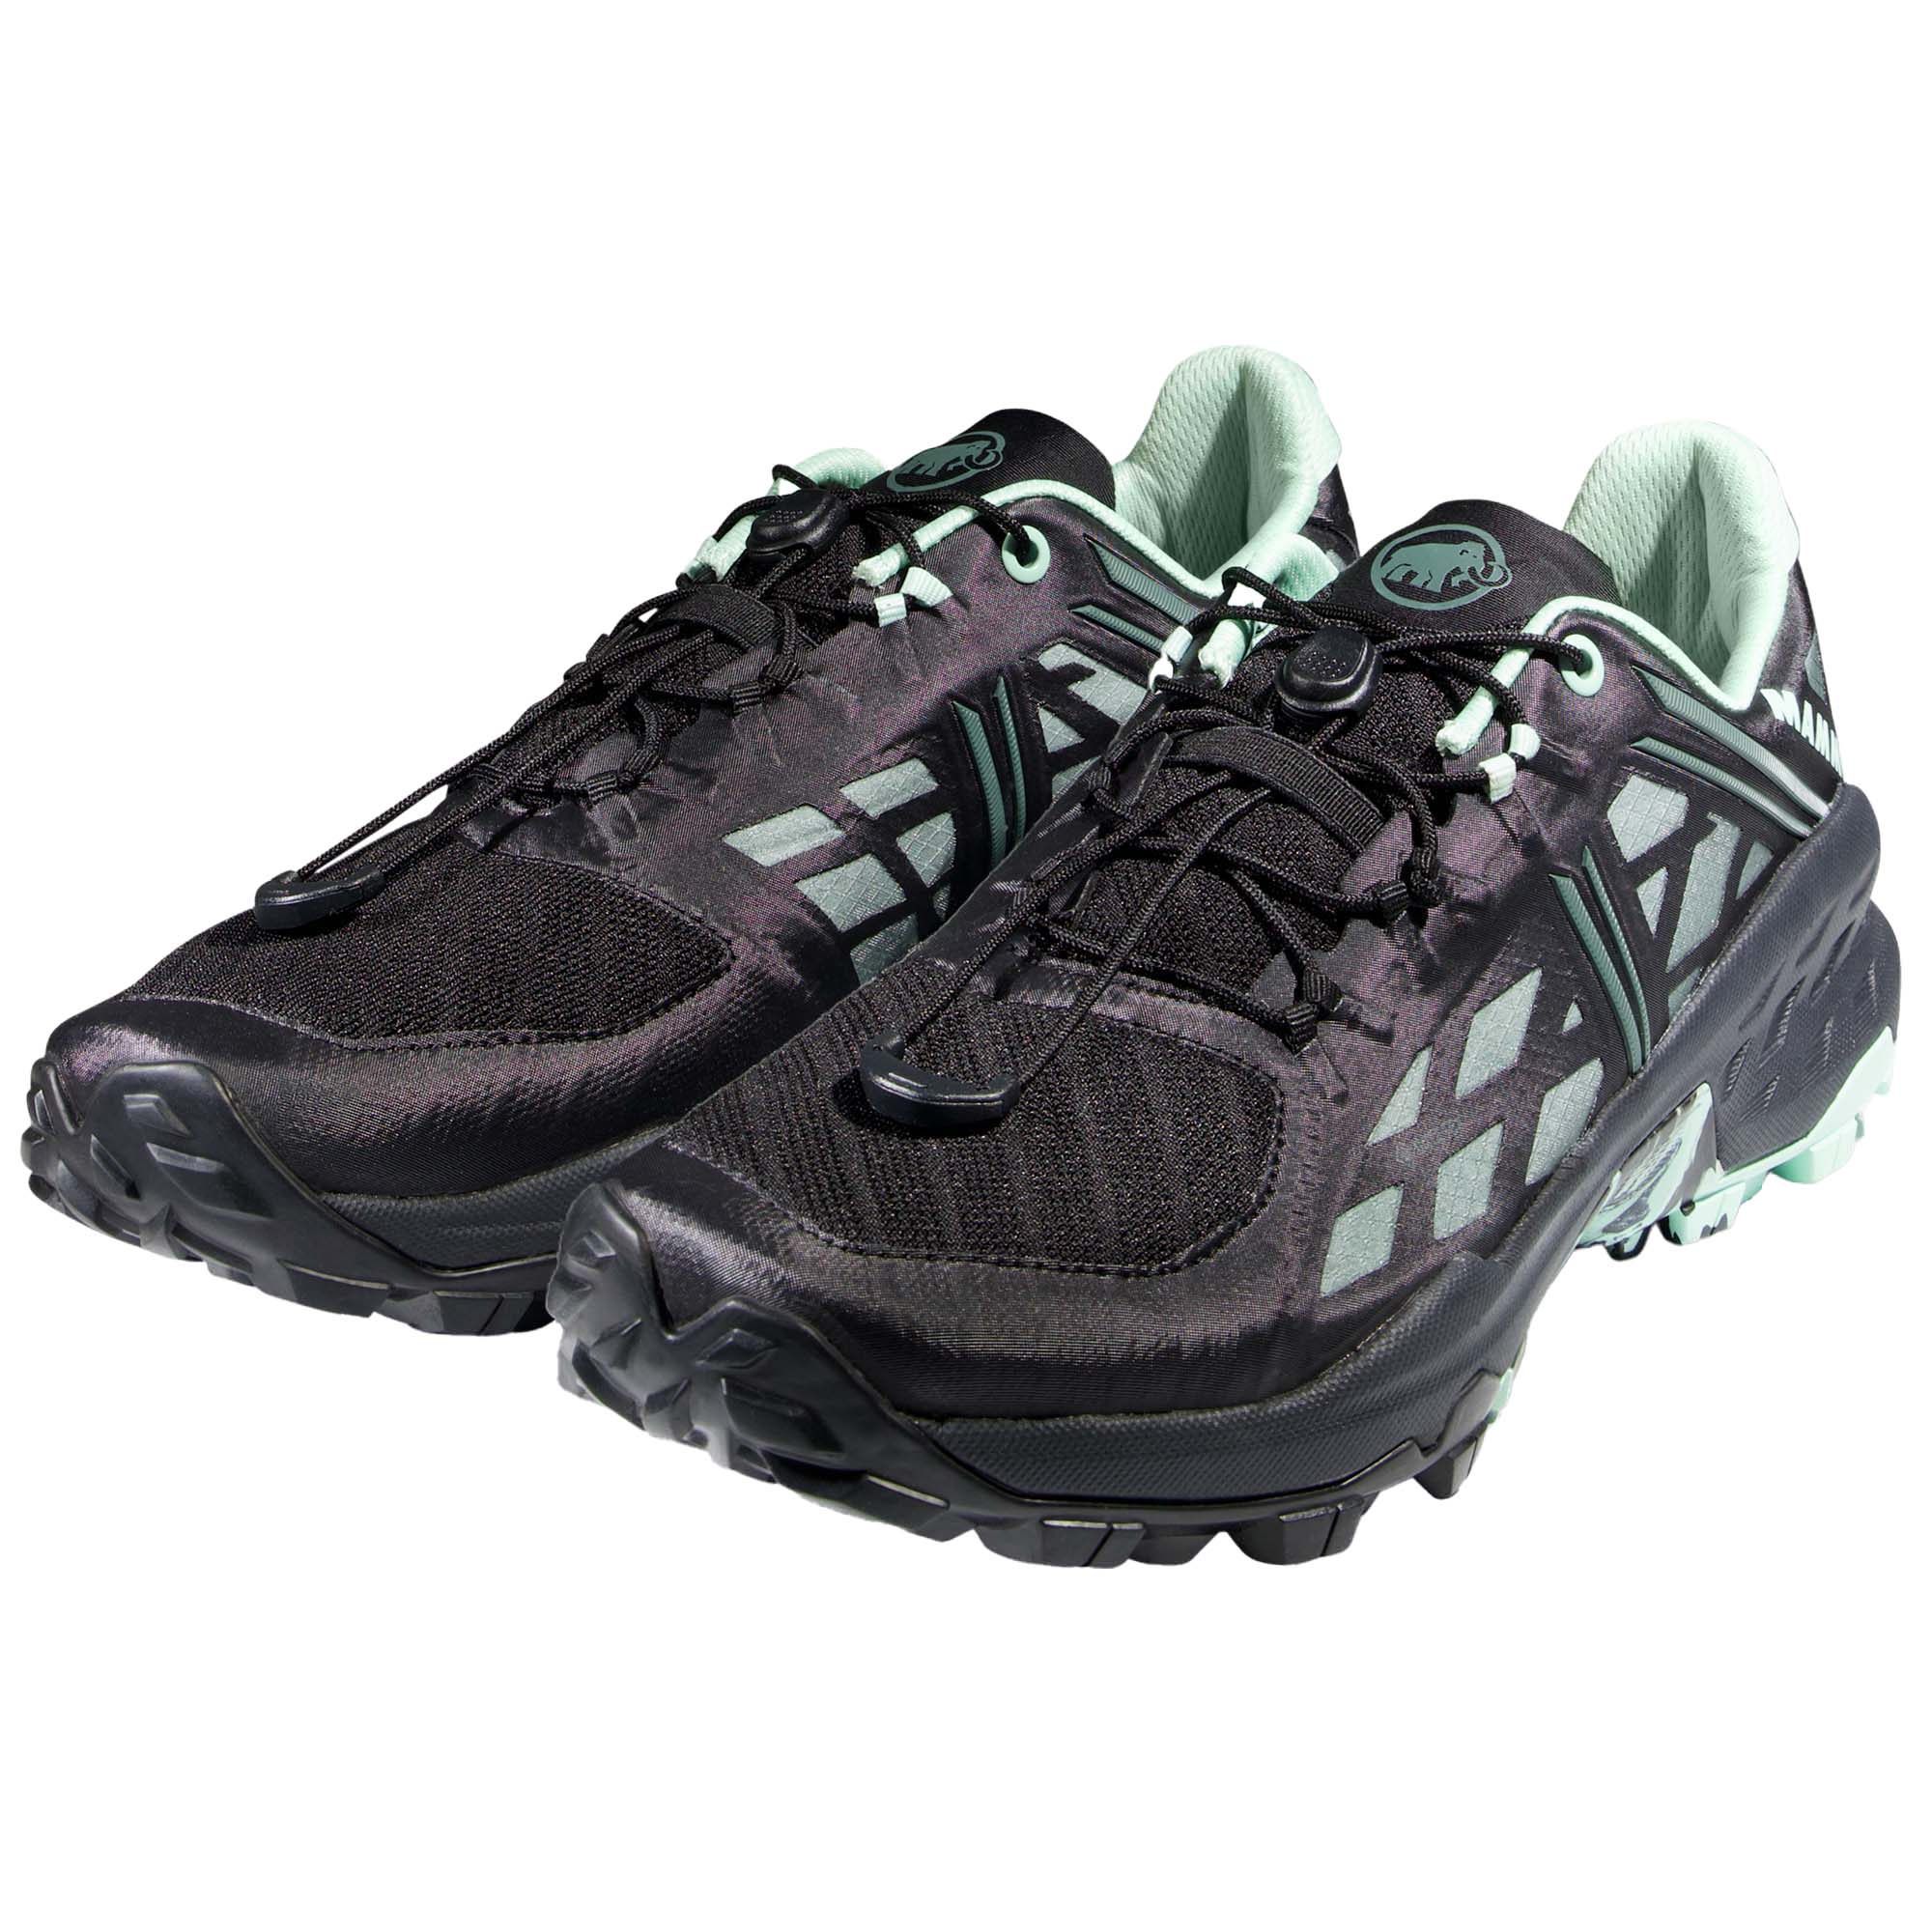 Mammut Sertig TR Low GTX Women's Trail Running Shoes